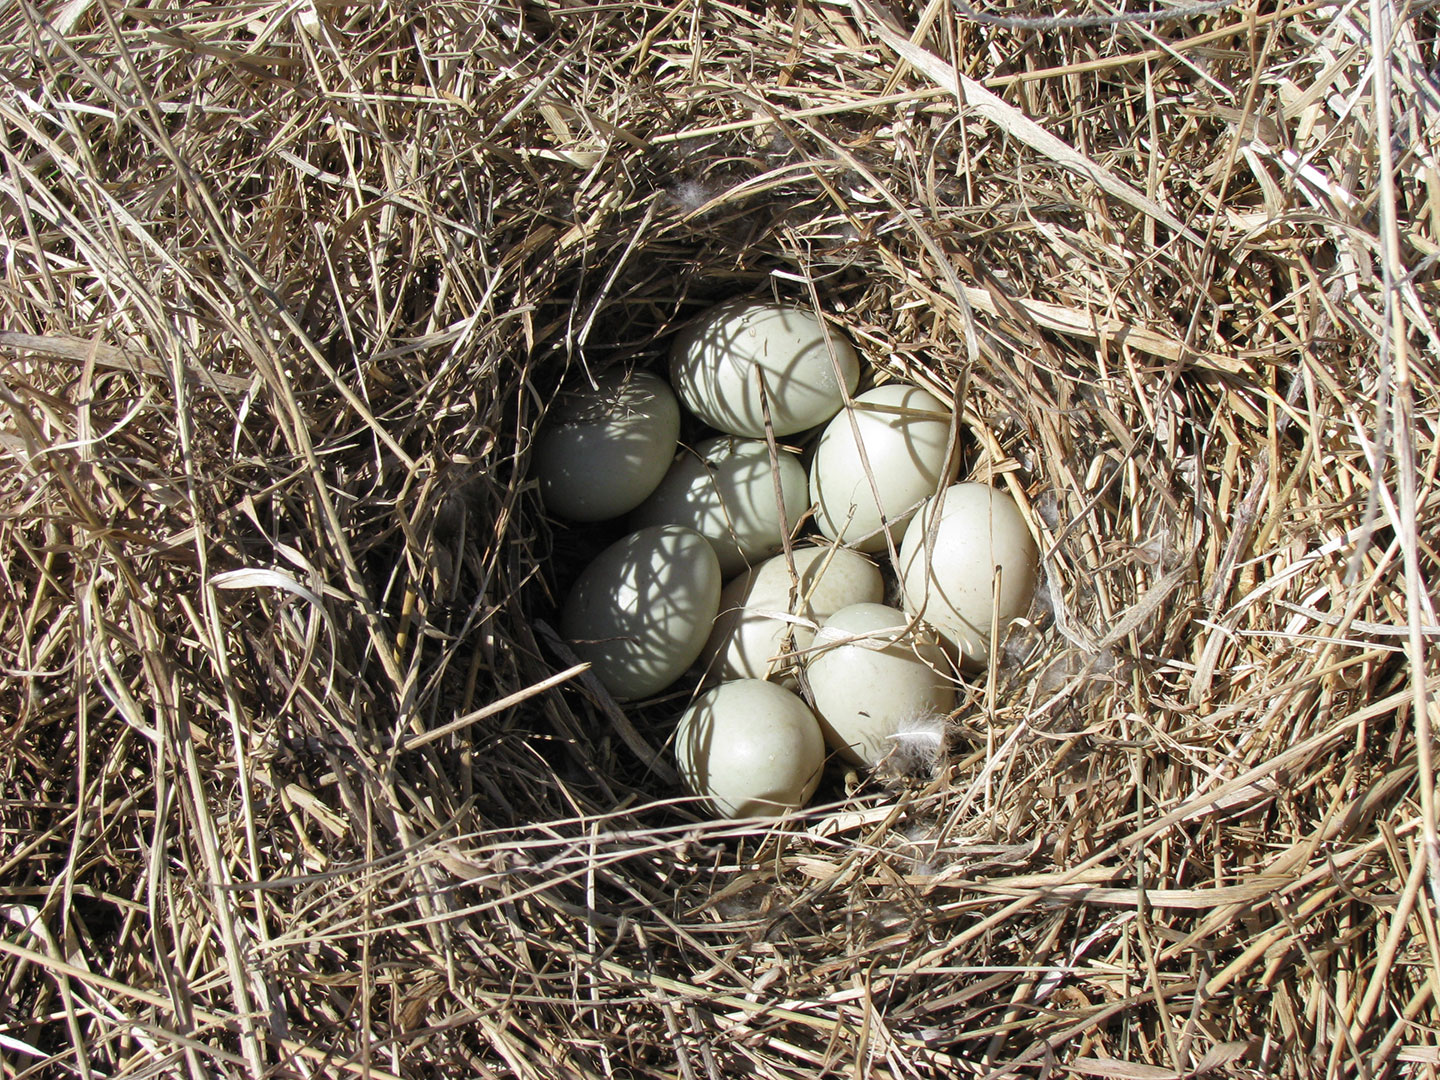 Mallard Ground Nest With Eggs